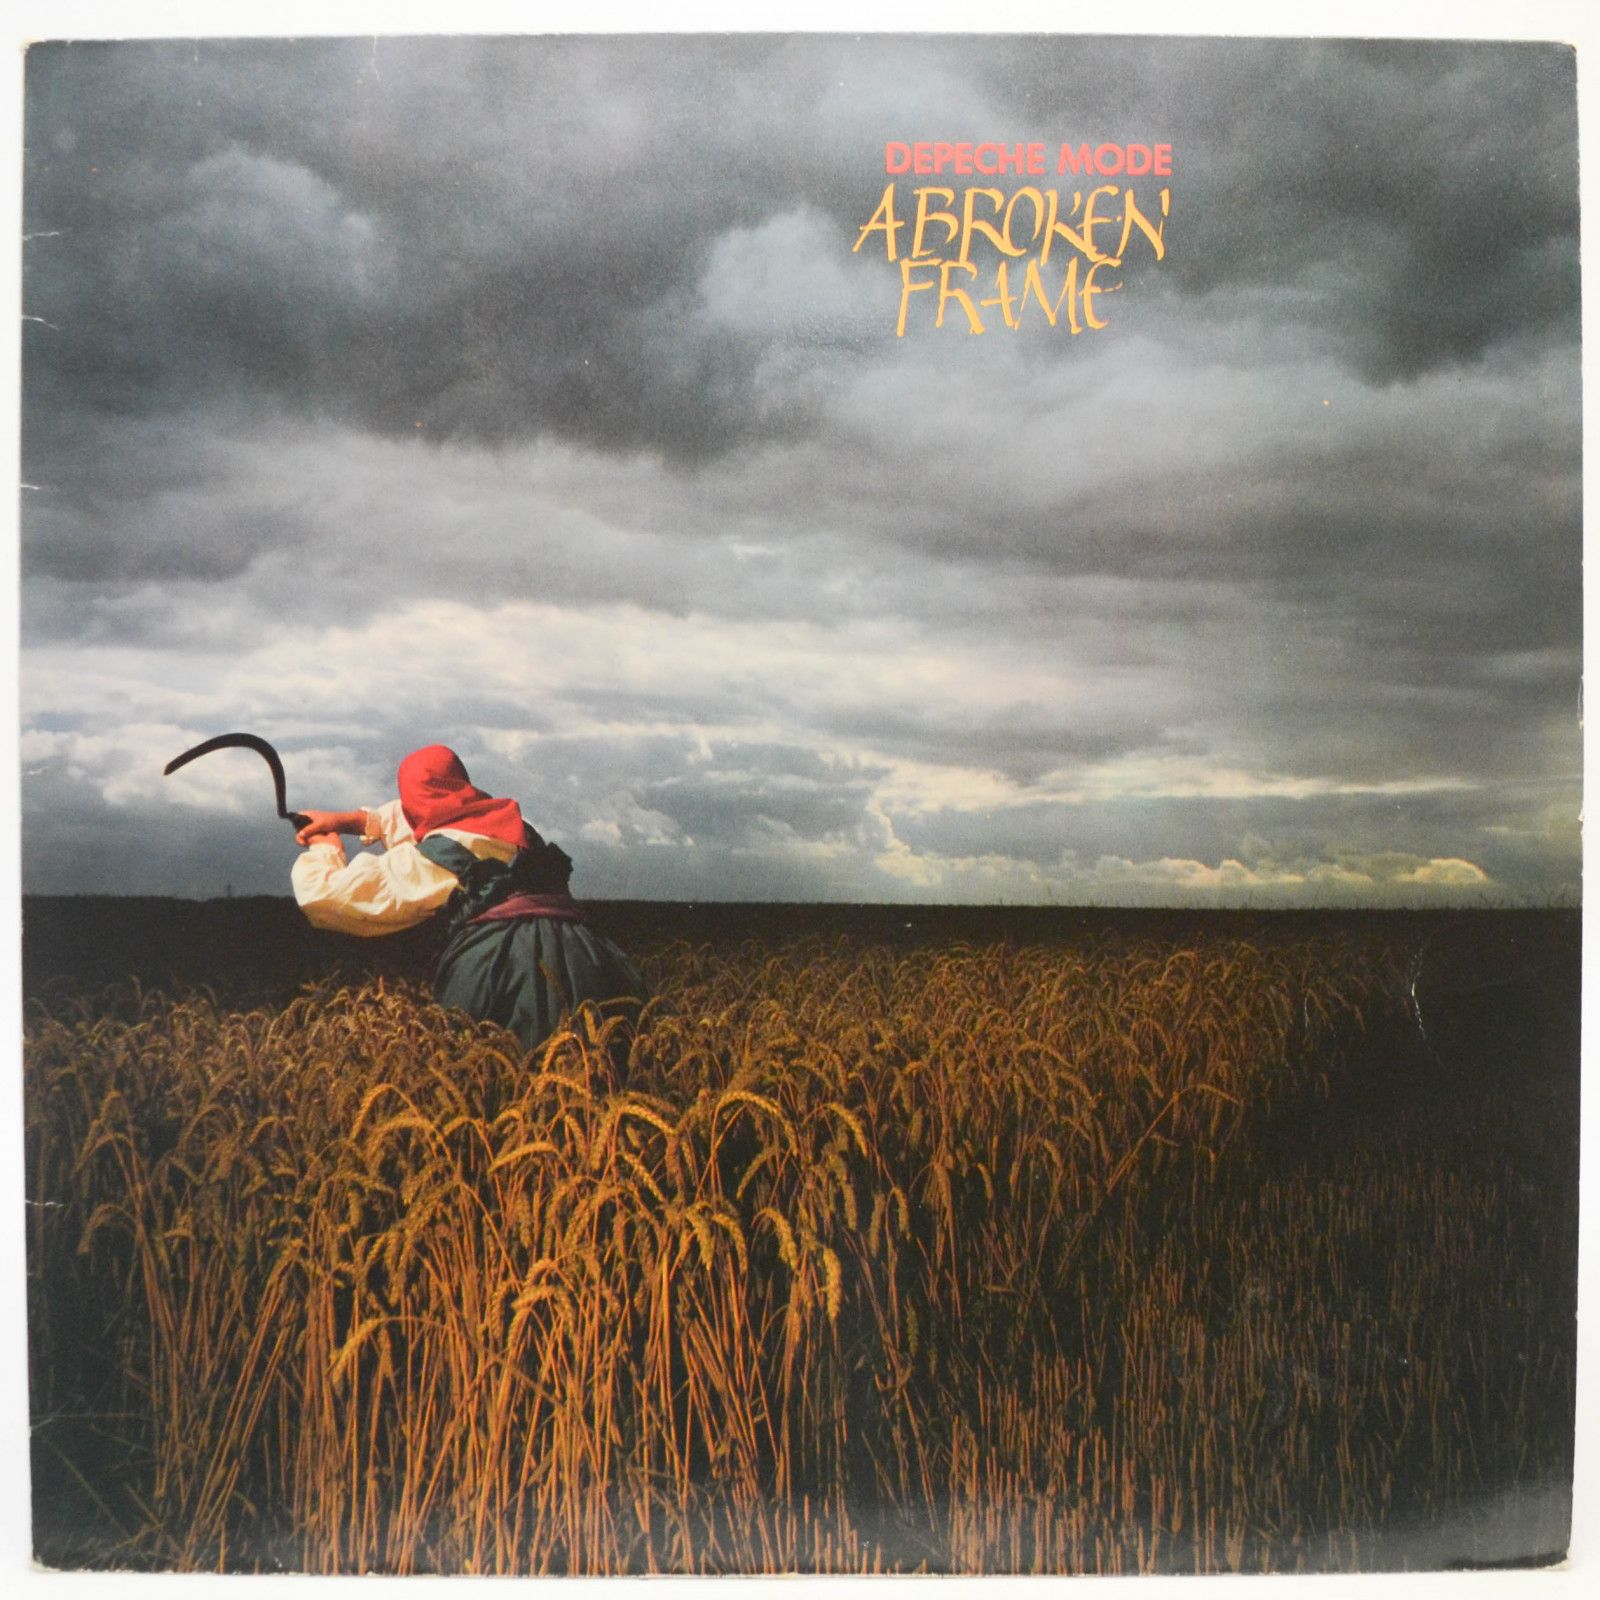 Depeche Mode — A Broken Frame, 1982